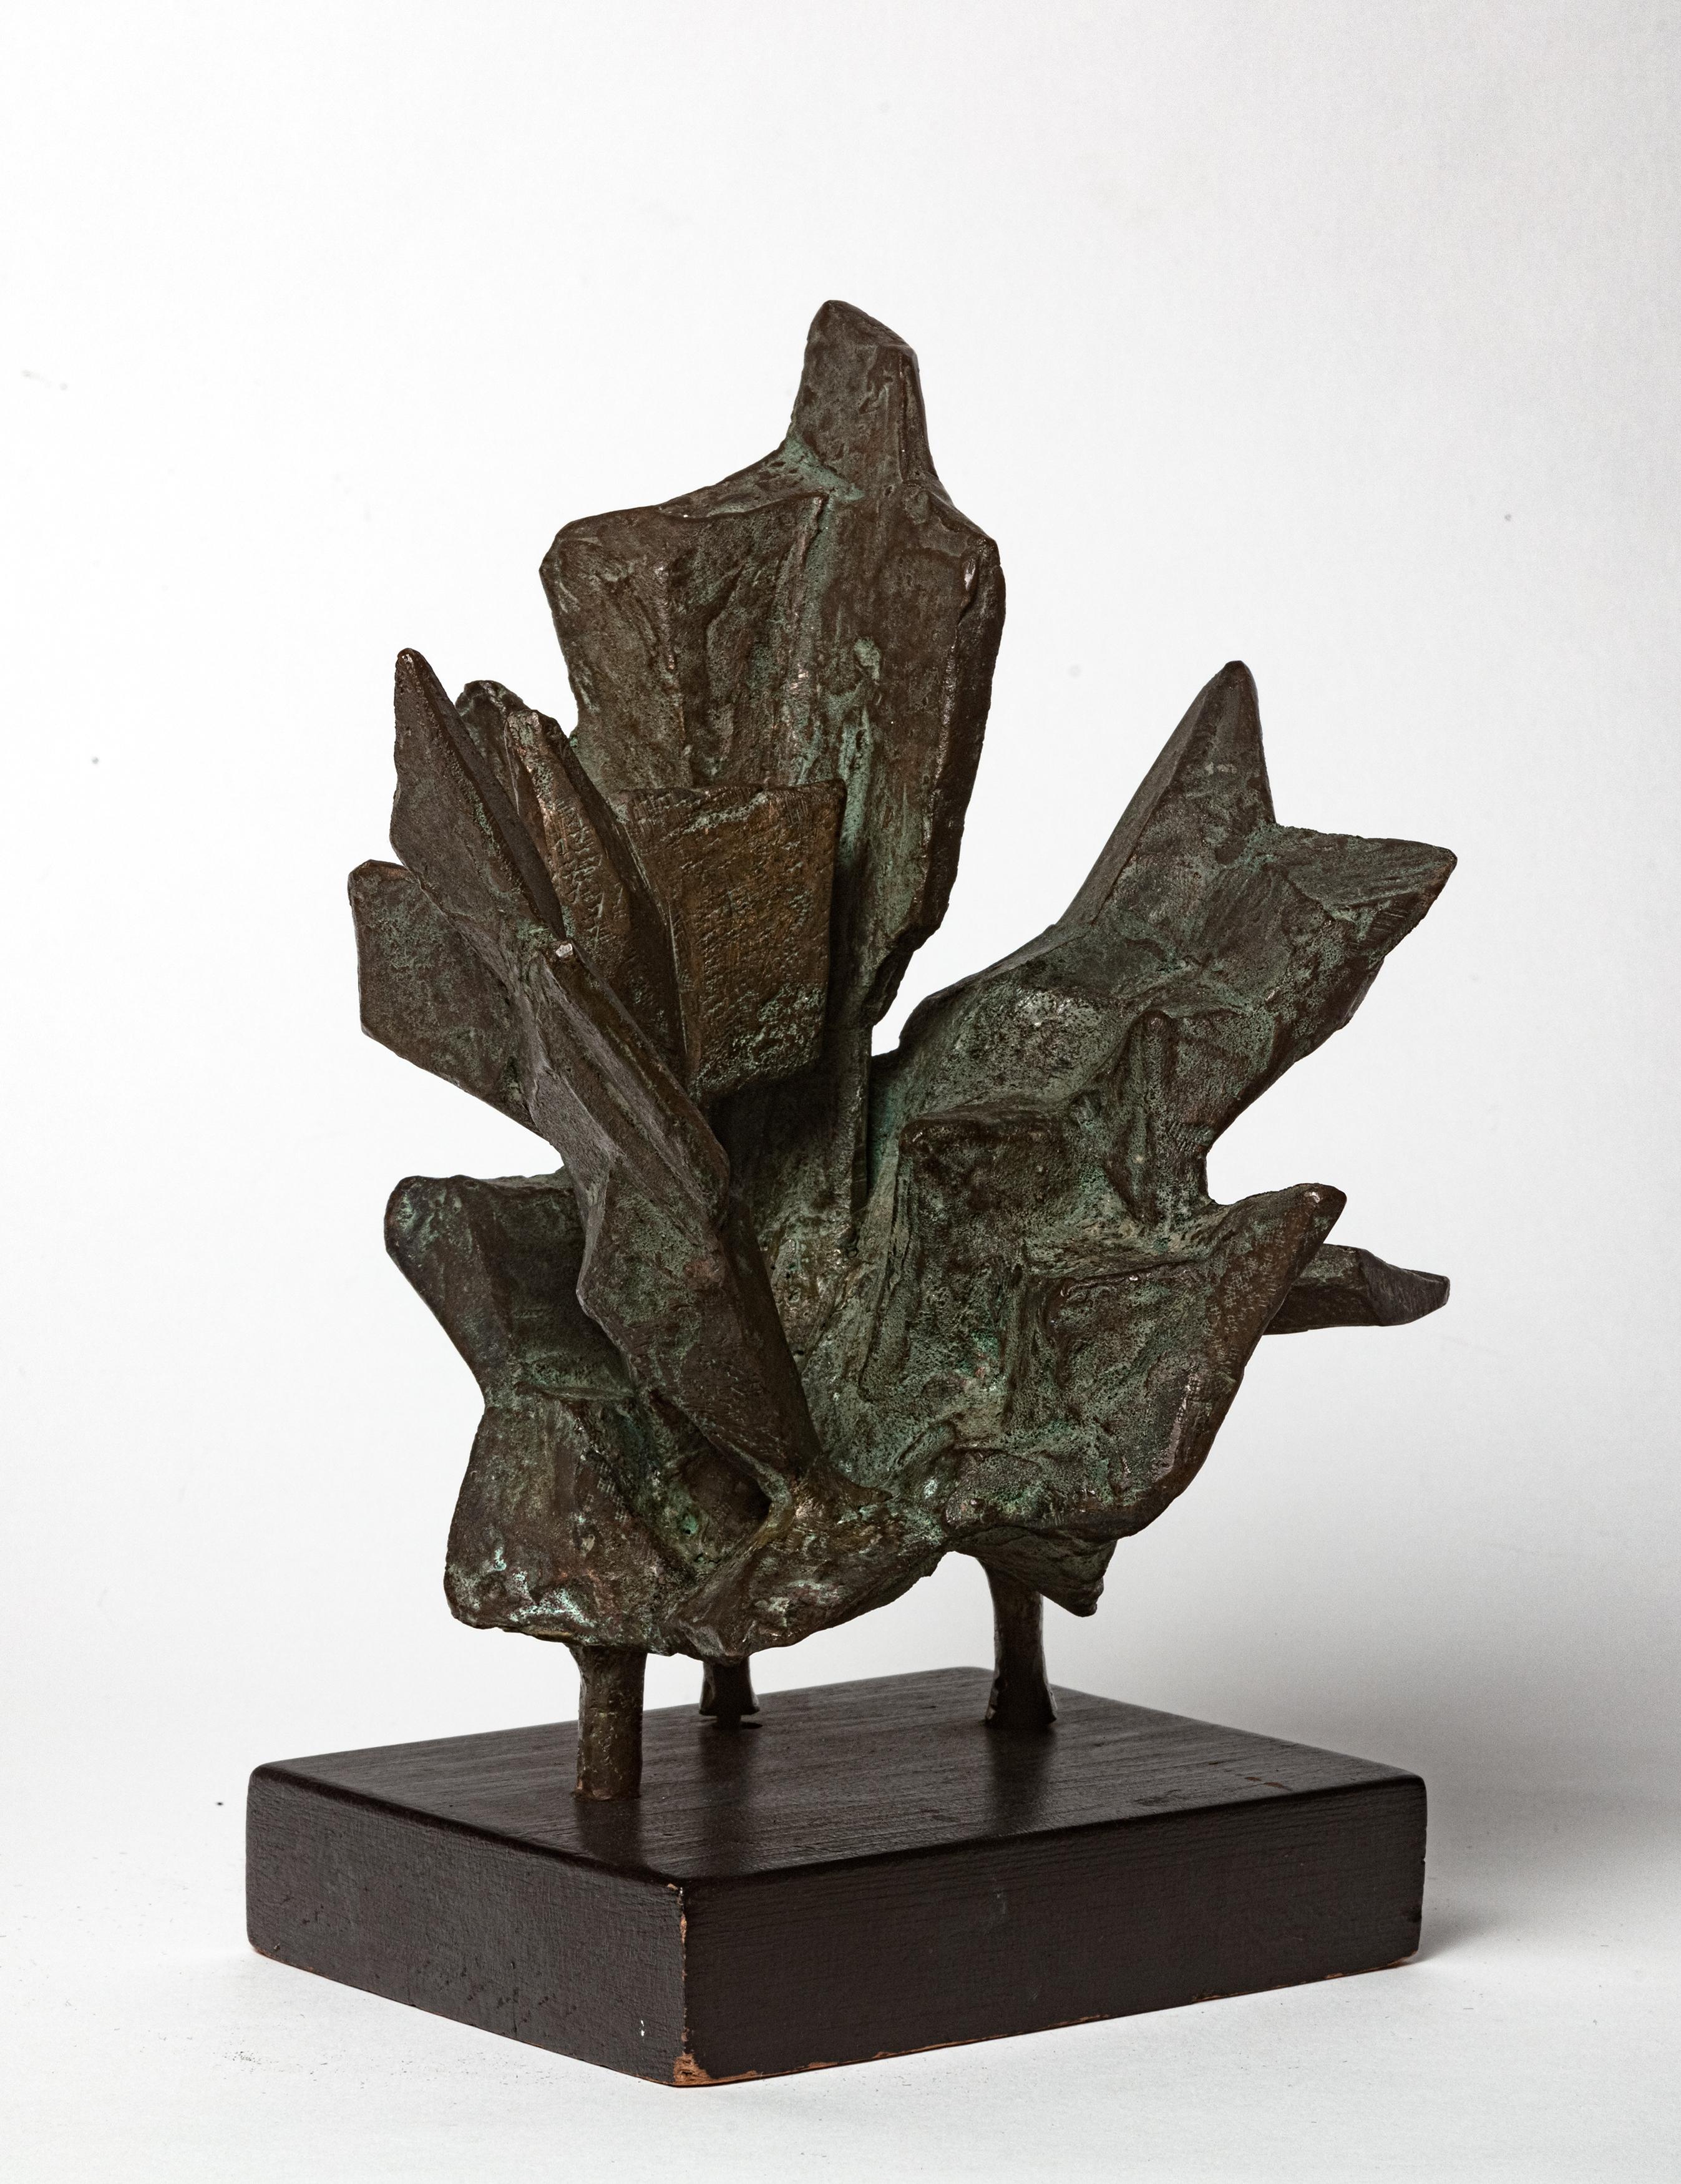 Unbenannt – Sculpture von Lin Emery